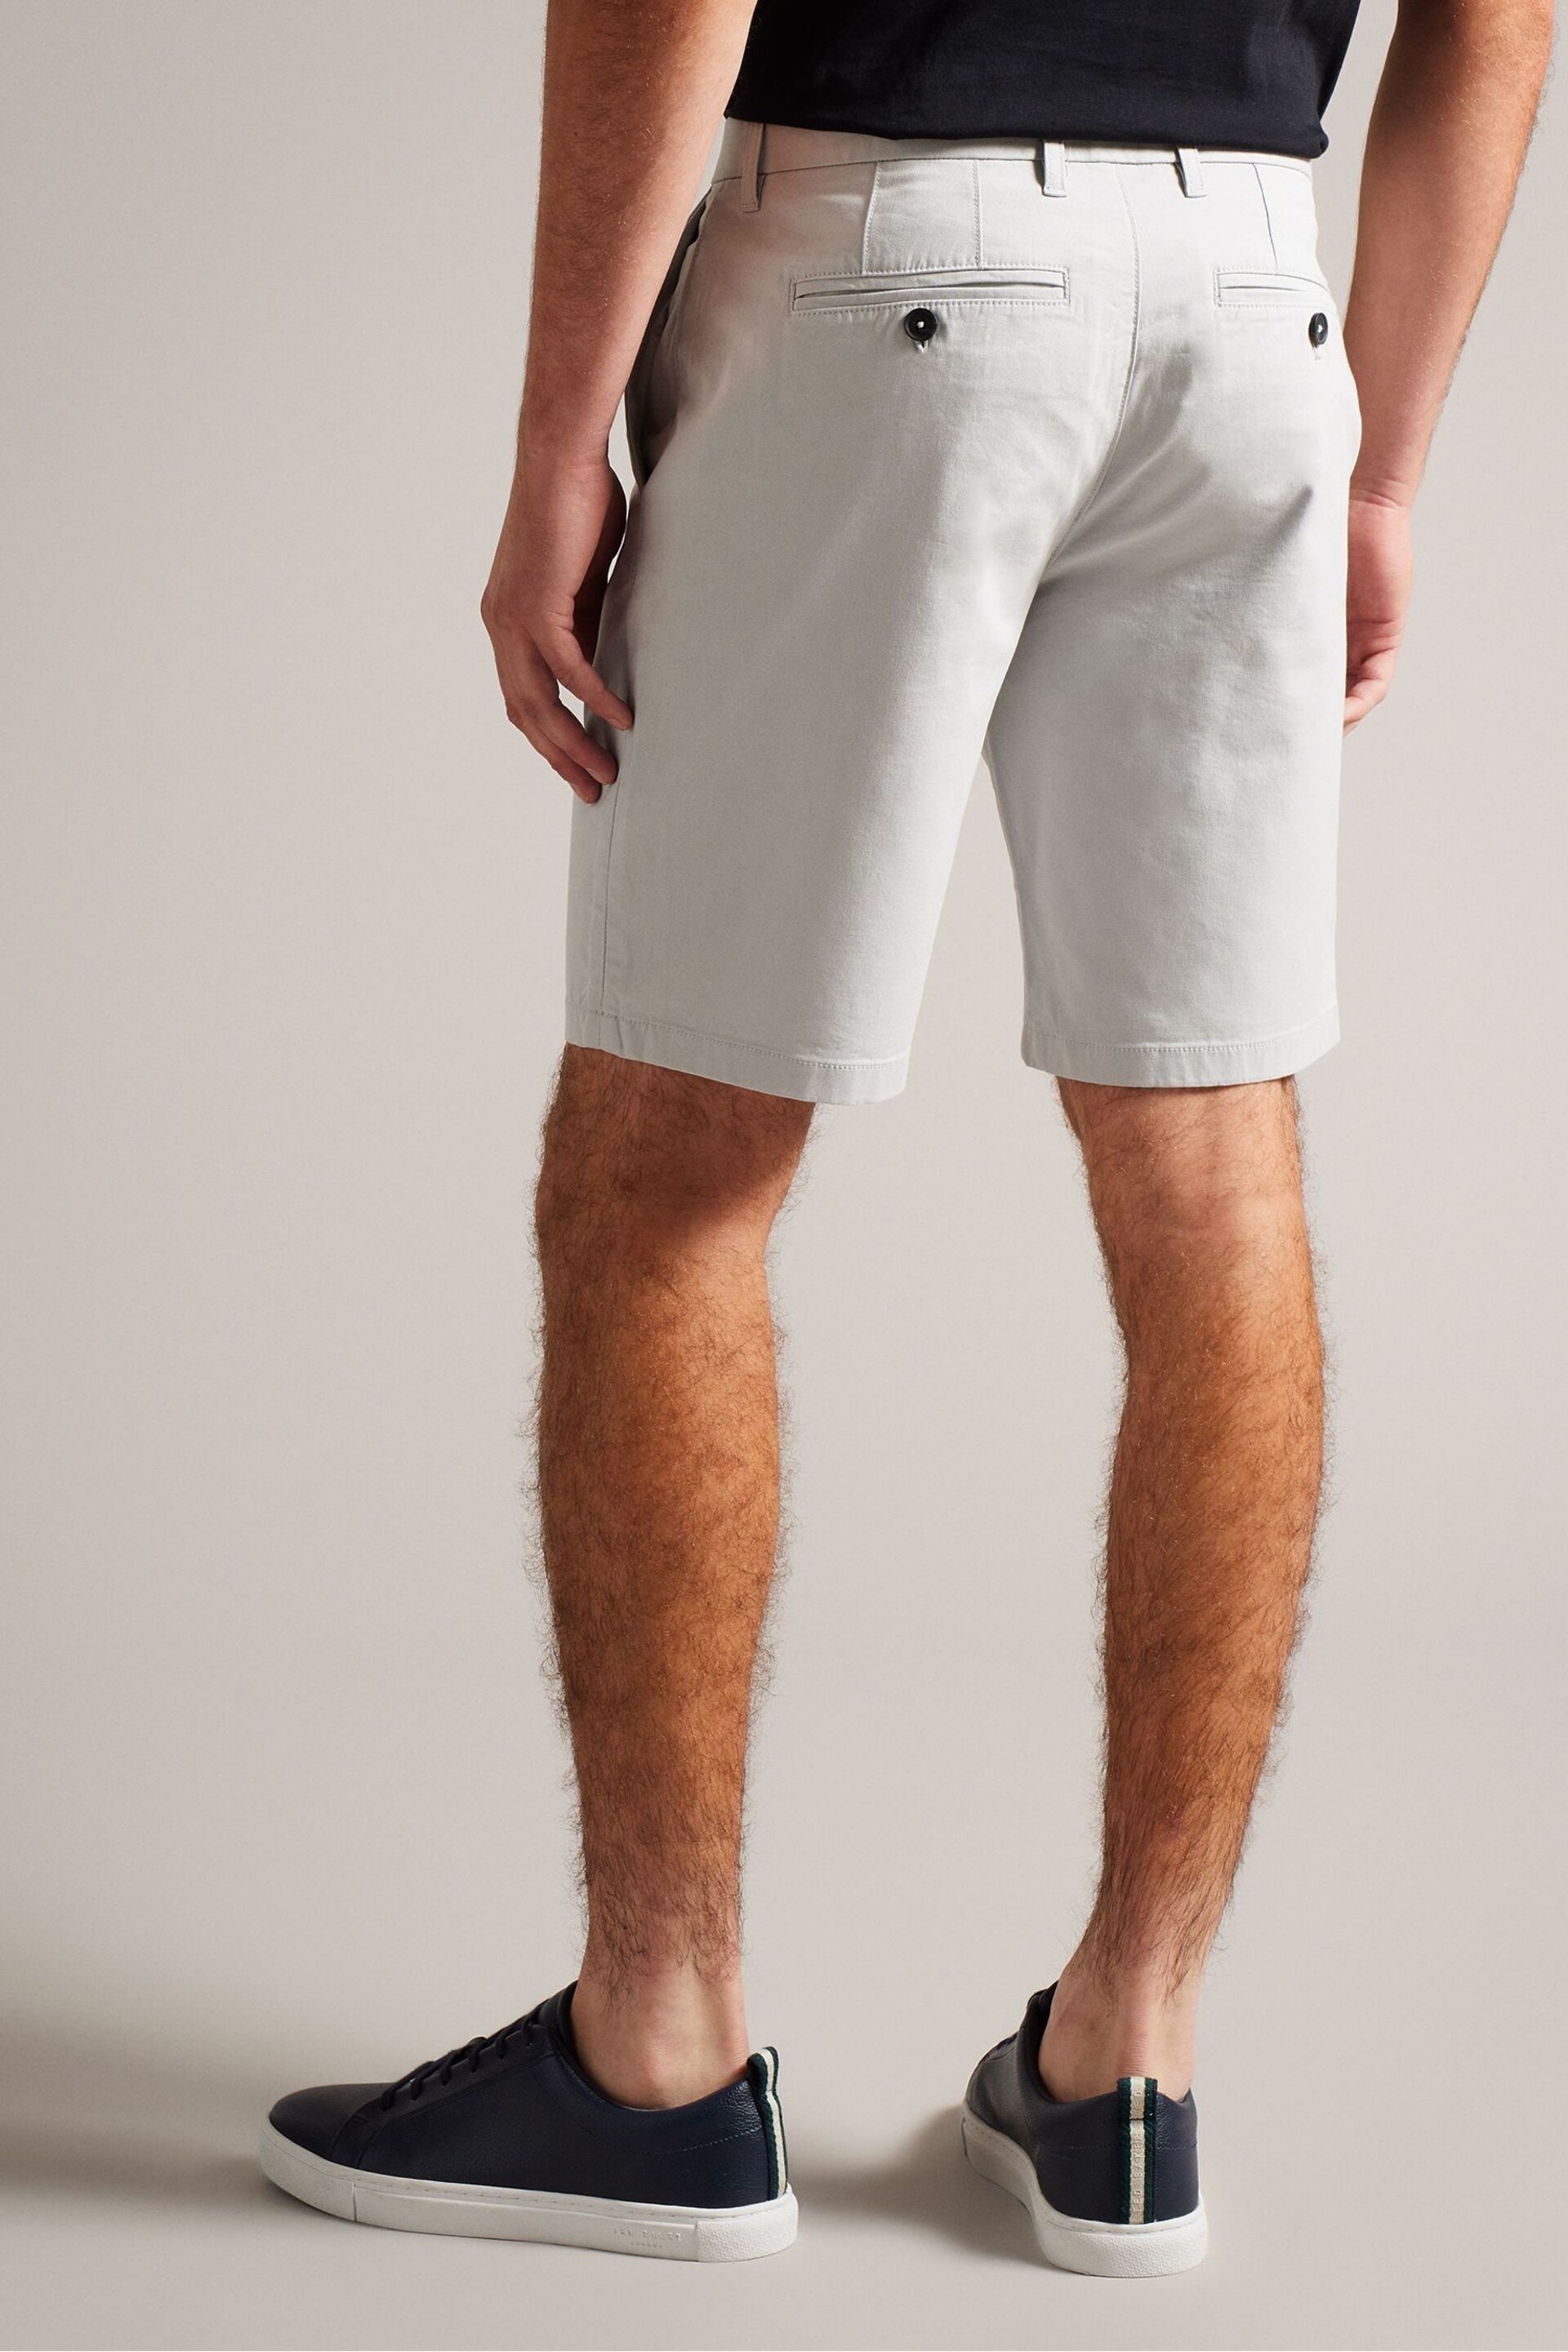 Ted Baker Grey Alscot Chino Shorts - Image 2 of 5